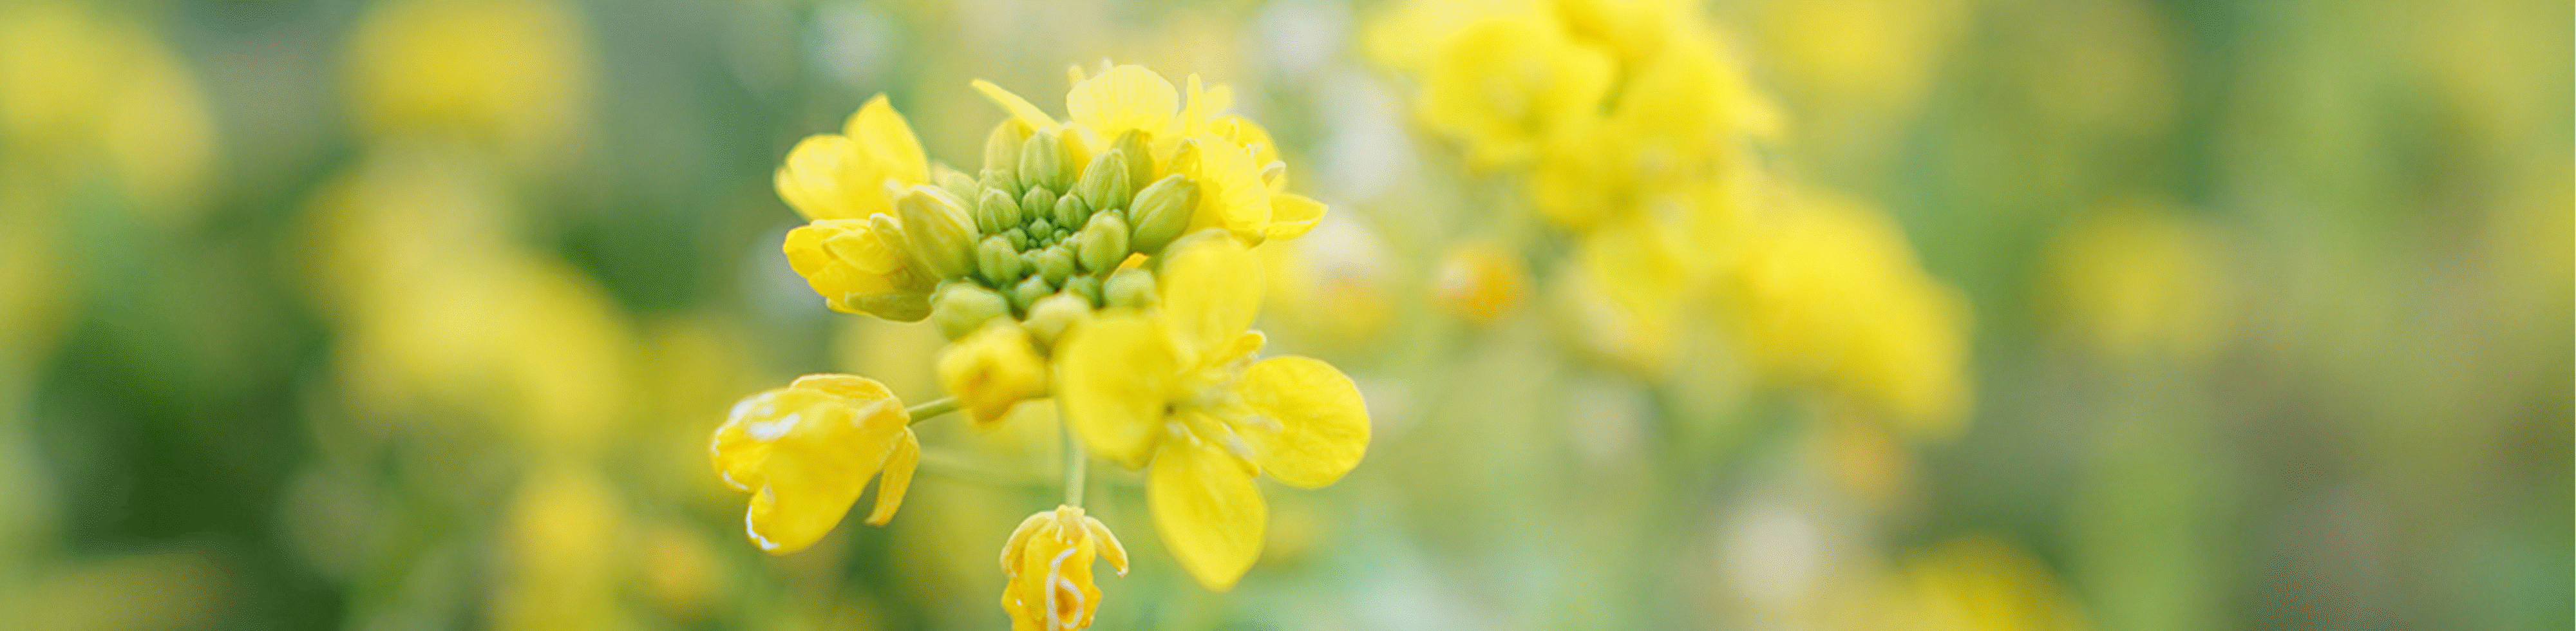 Obrázok žltých kvetov